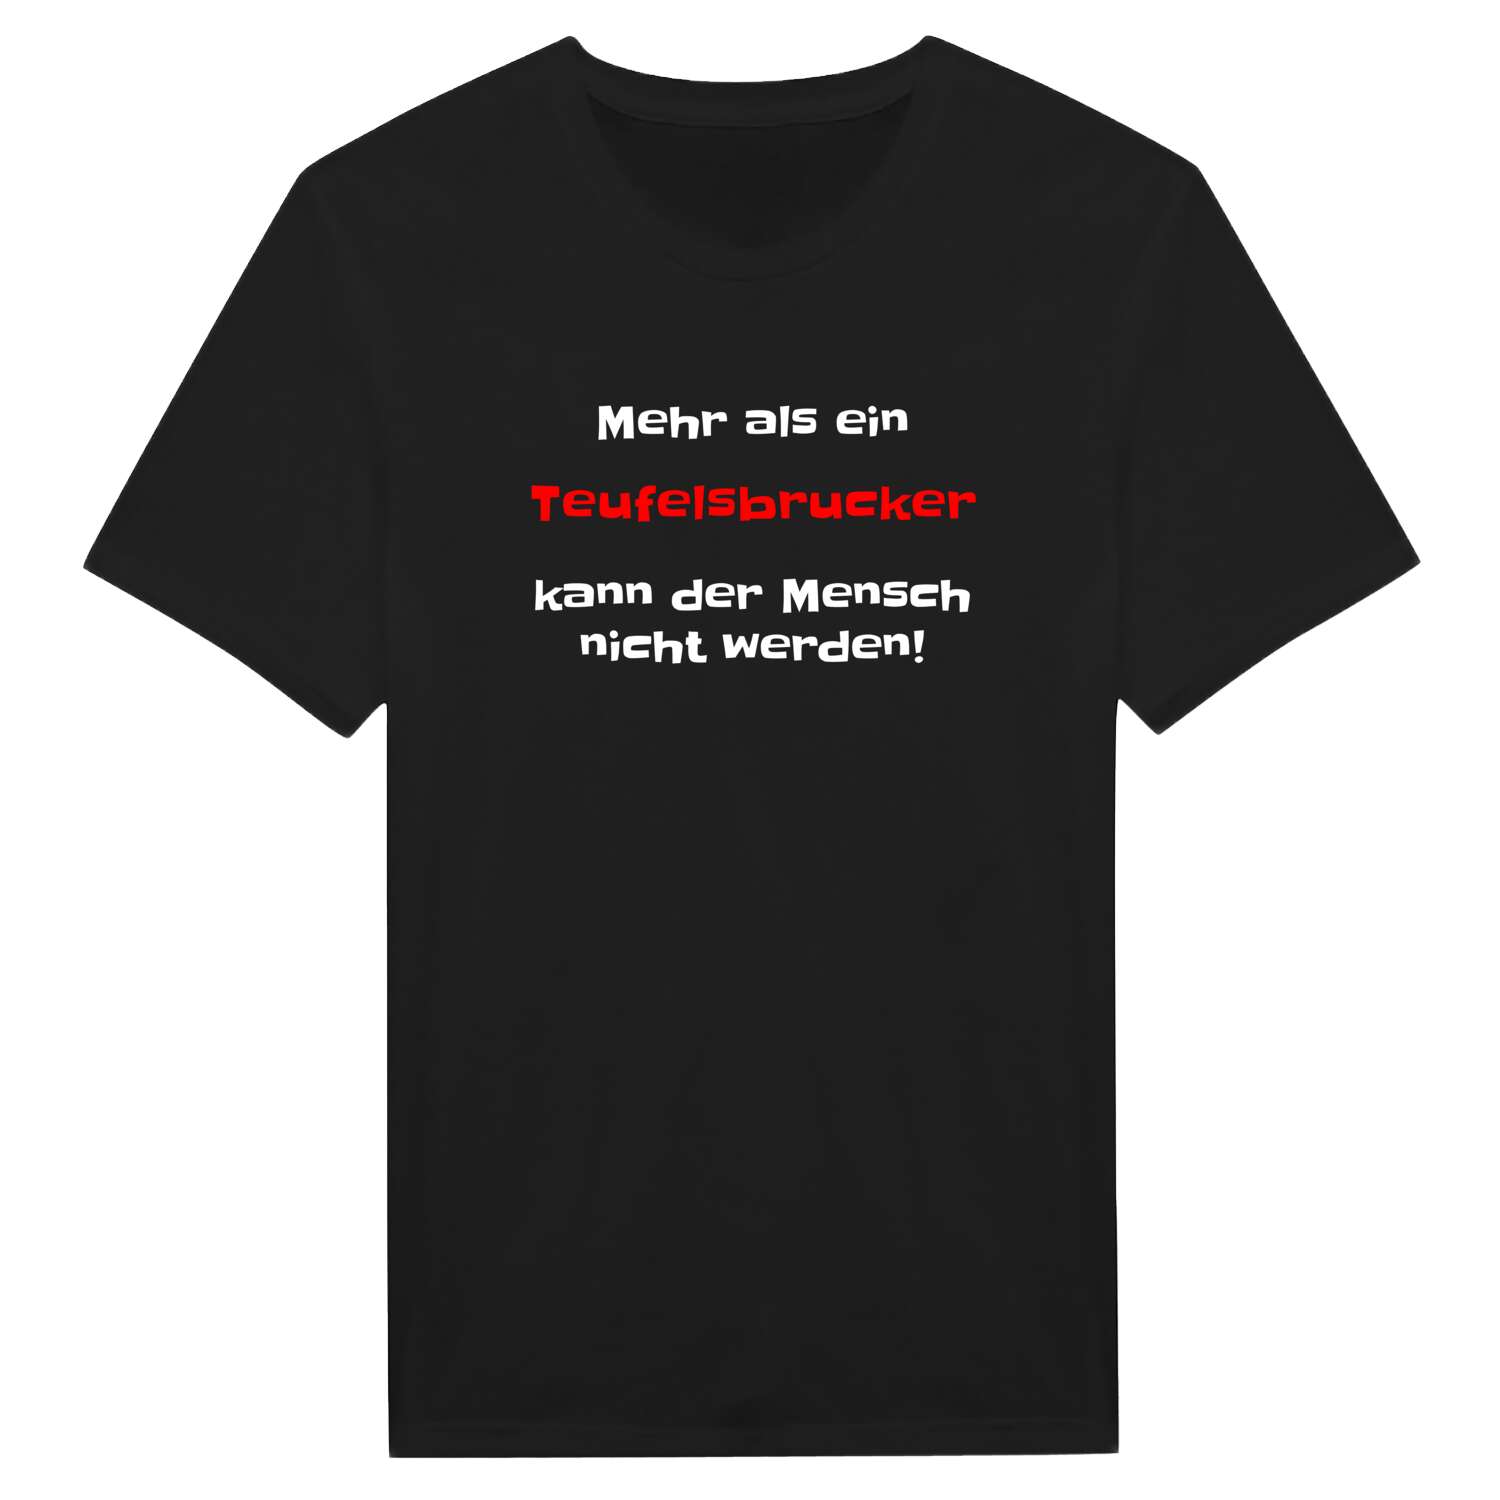 Teufelsbruck T-Shirt »Mehr als ein«